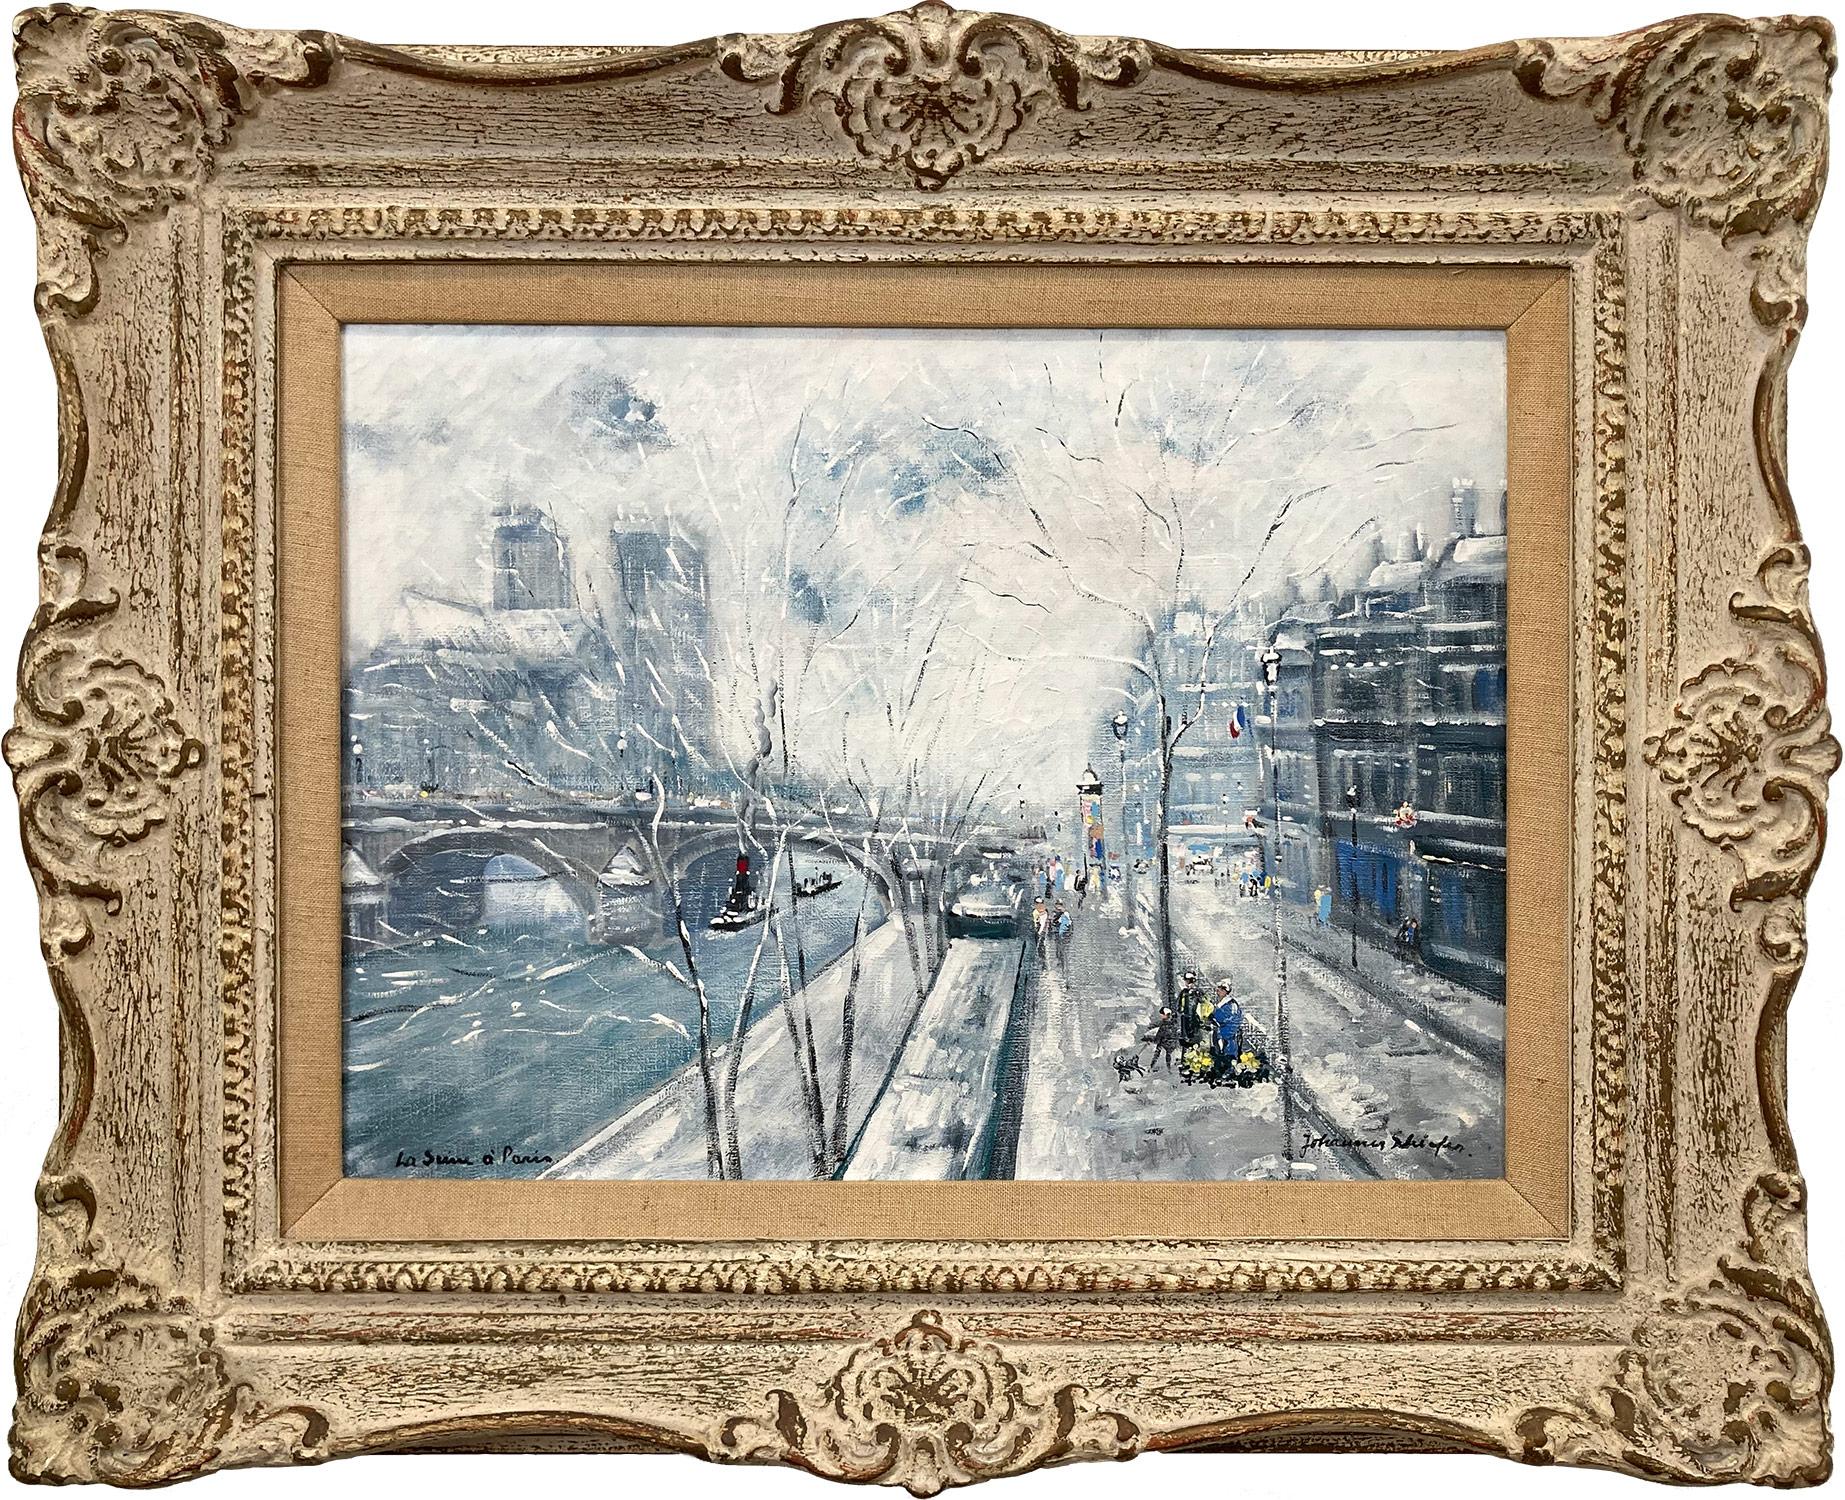 Johanne Schiefer Figurative Painting - "La Seine a Paris" Notre Dame Post-Impressionist Snow Scene Oil on Canvas 